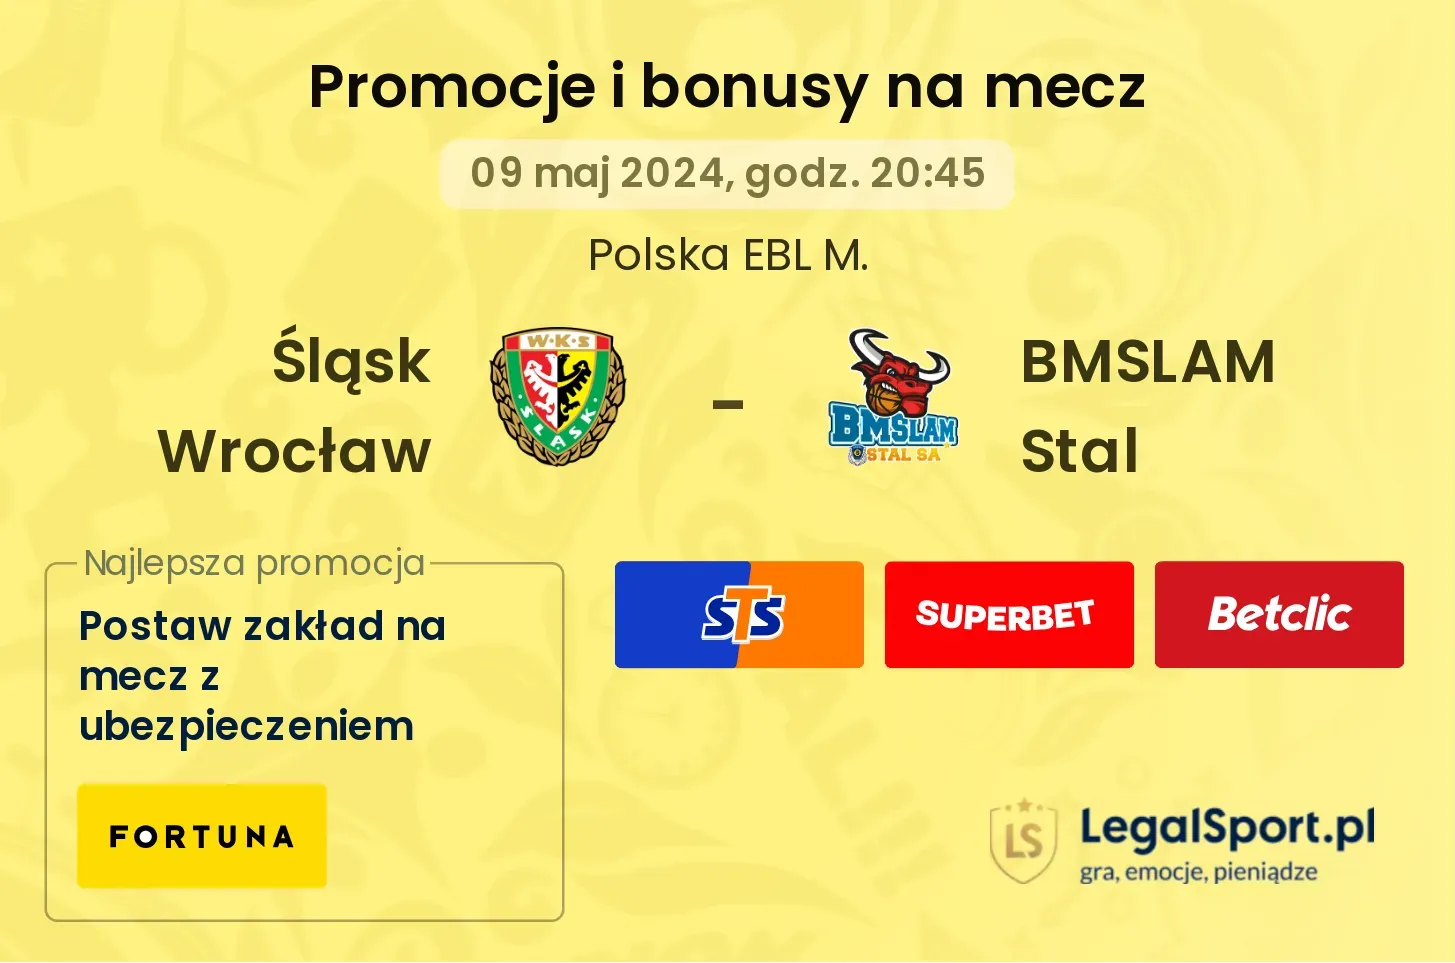 Śląsk Wrocław - BMSLAM Stal promocje i bonusy (09.05, 20:45)